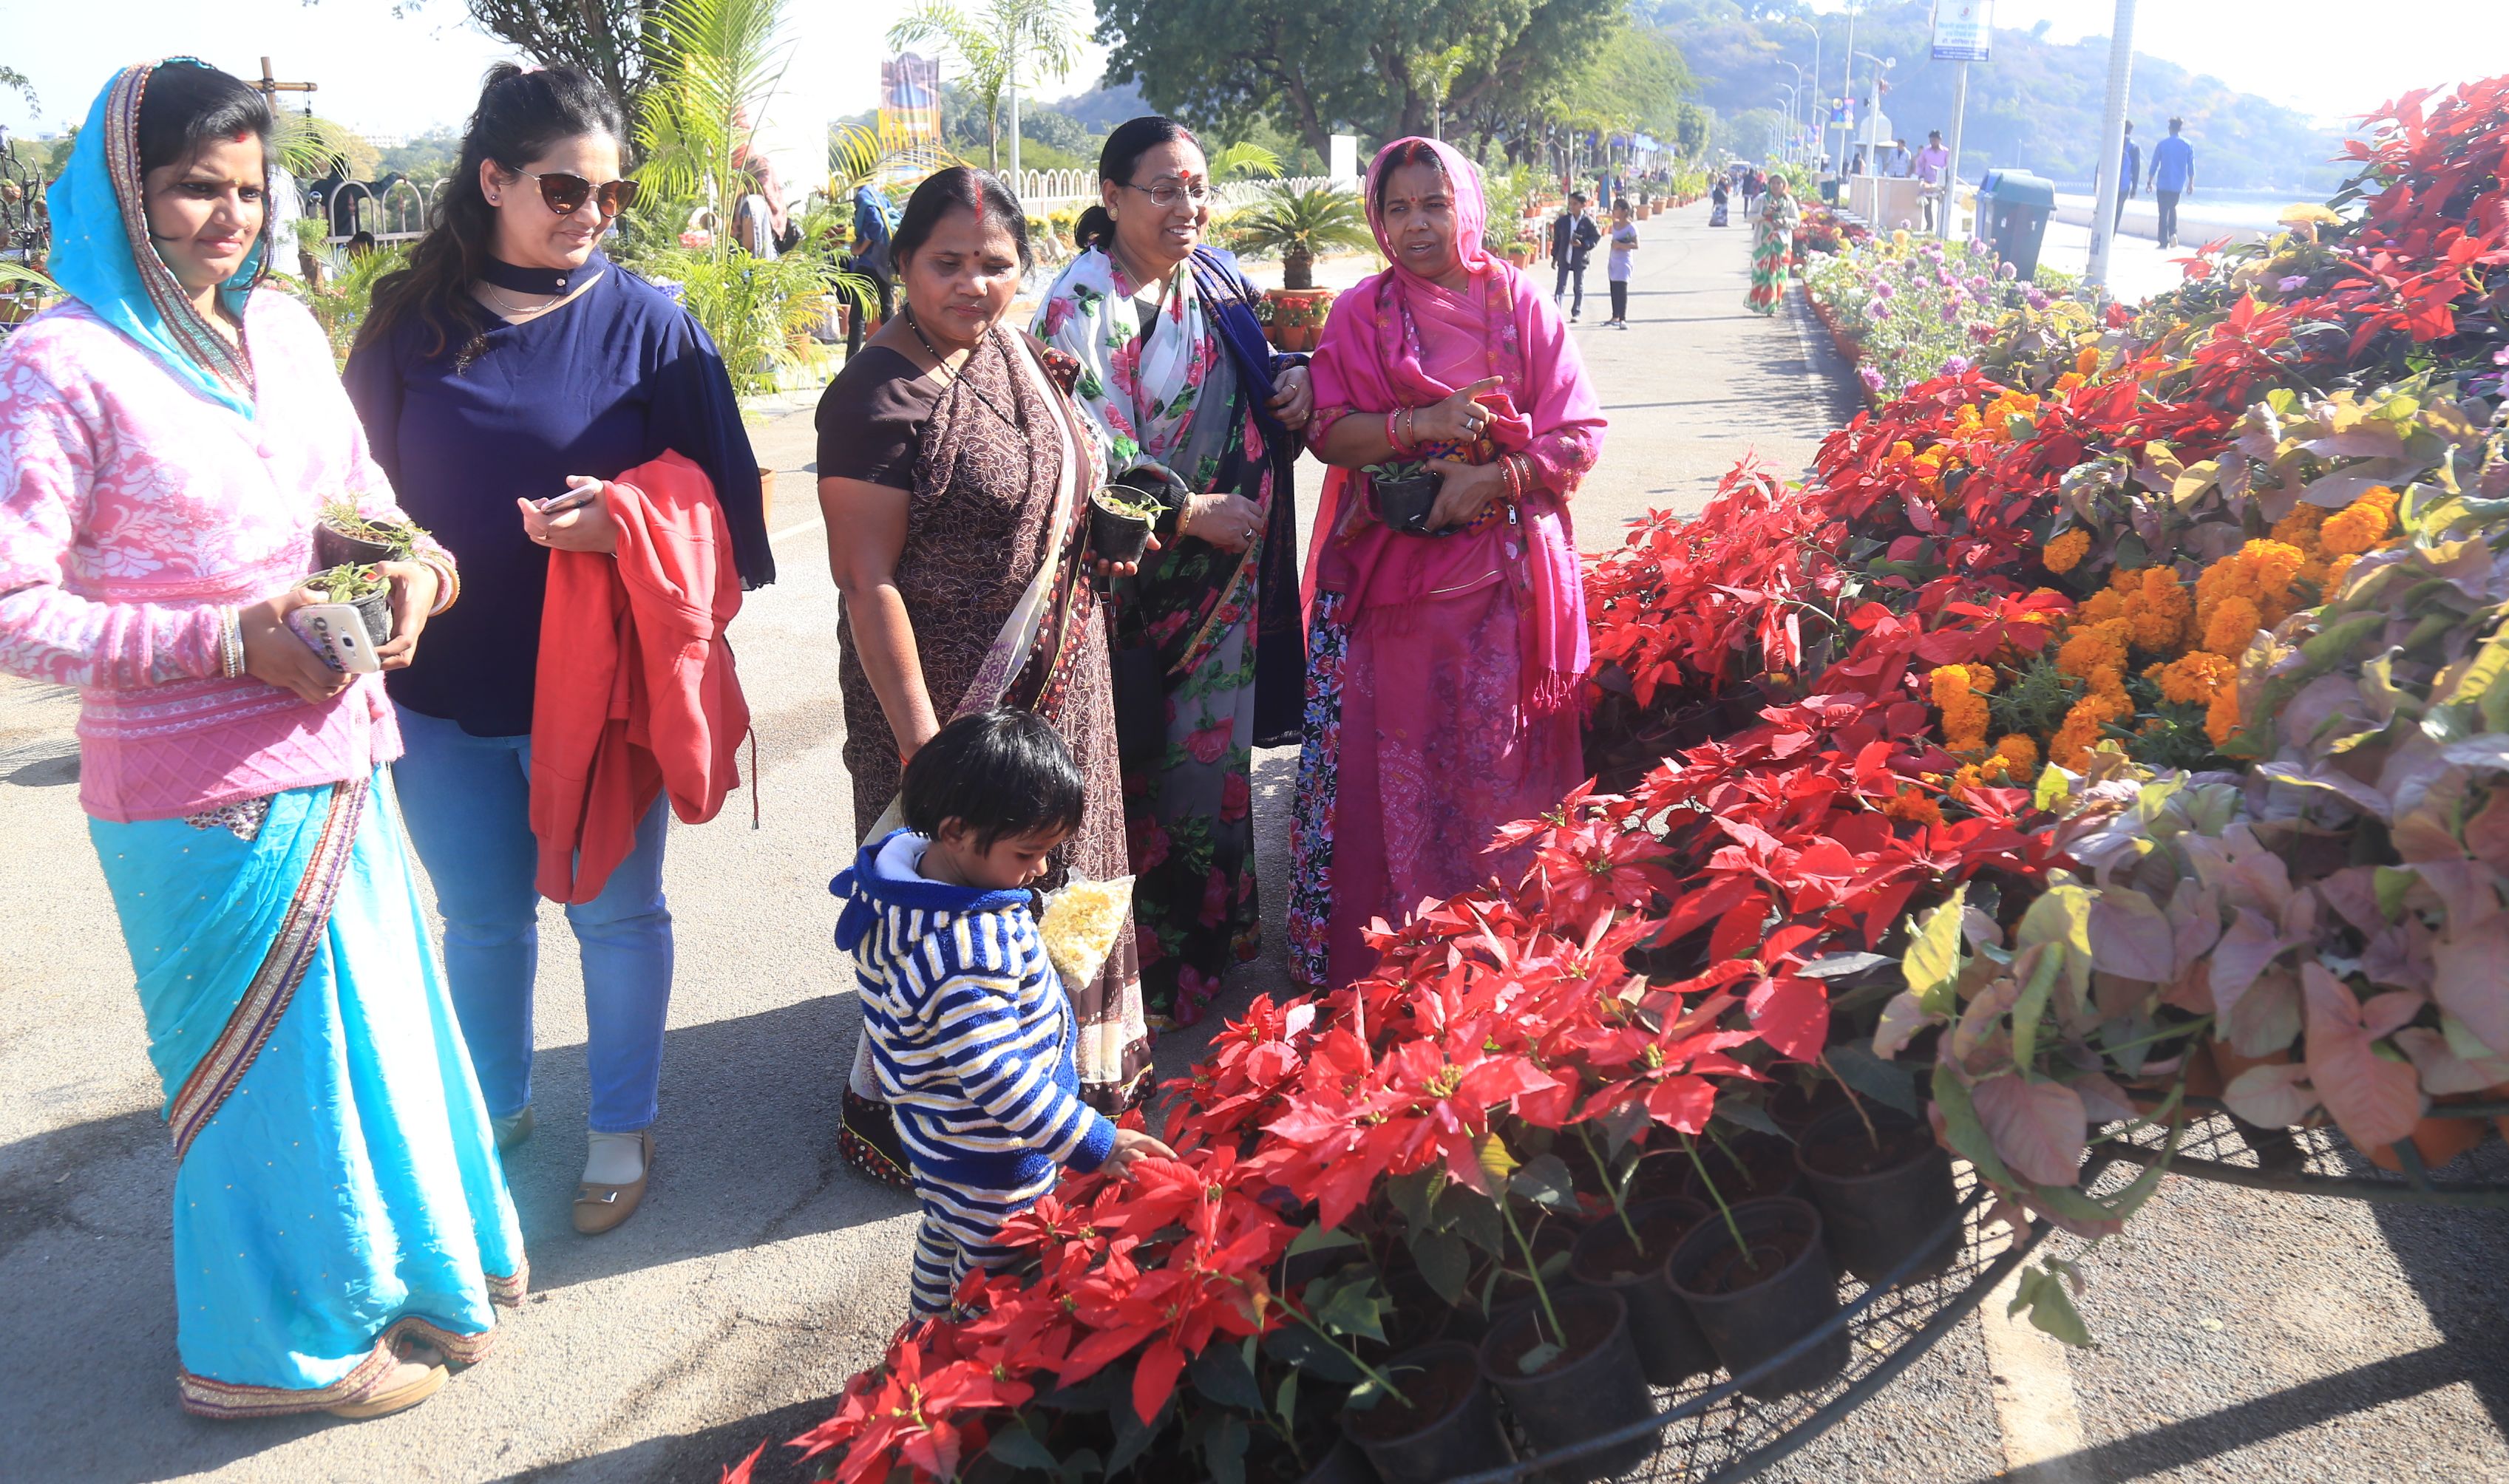 FLOWER SHOW UDAIPUR 2017 AT FATEHSAGAR